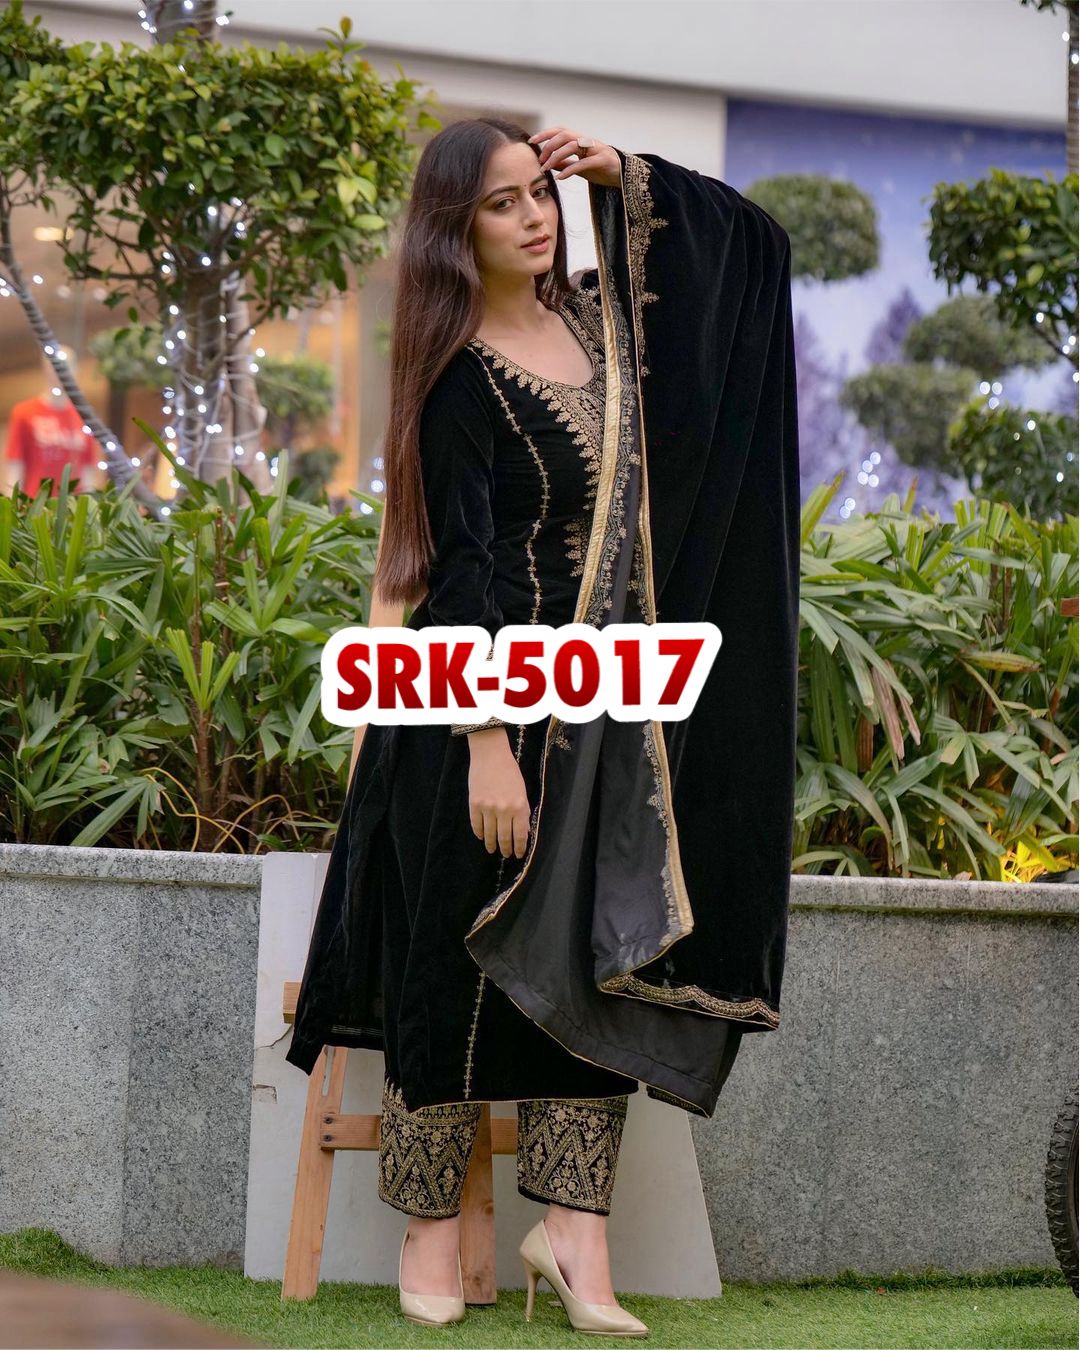 SHREE HARI SRK 5017 DESIGNER VELVET SUITS